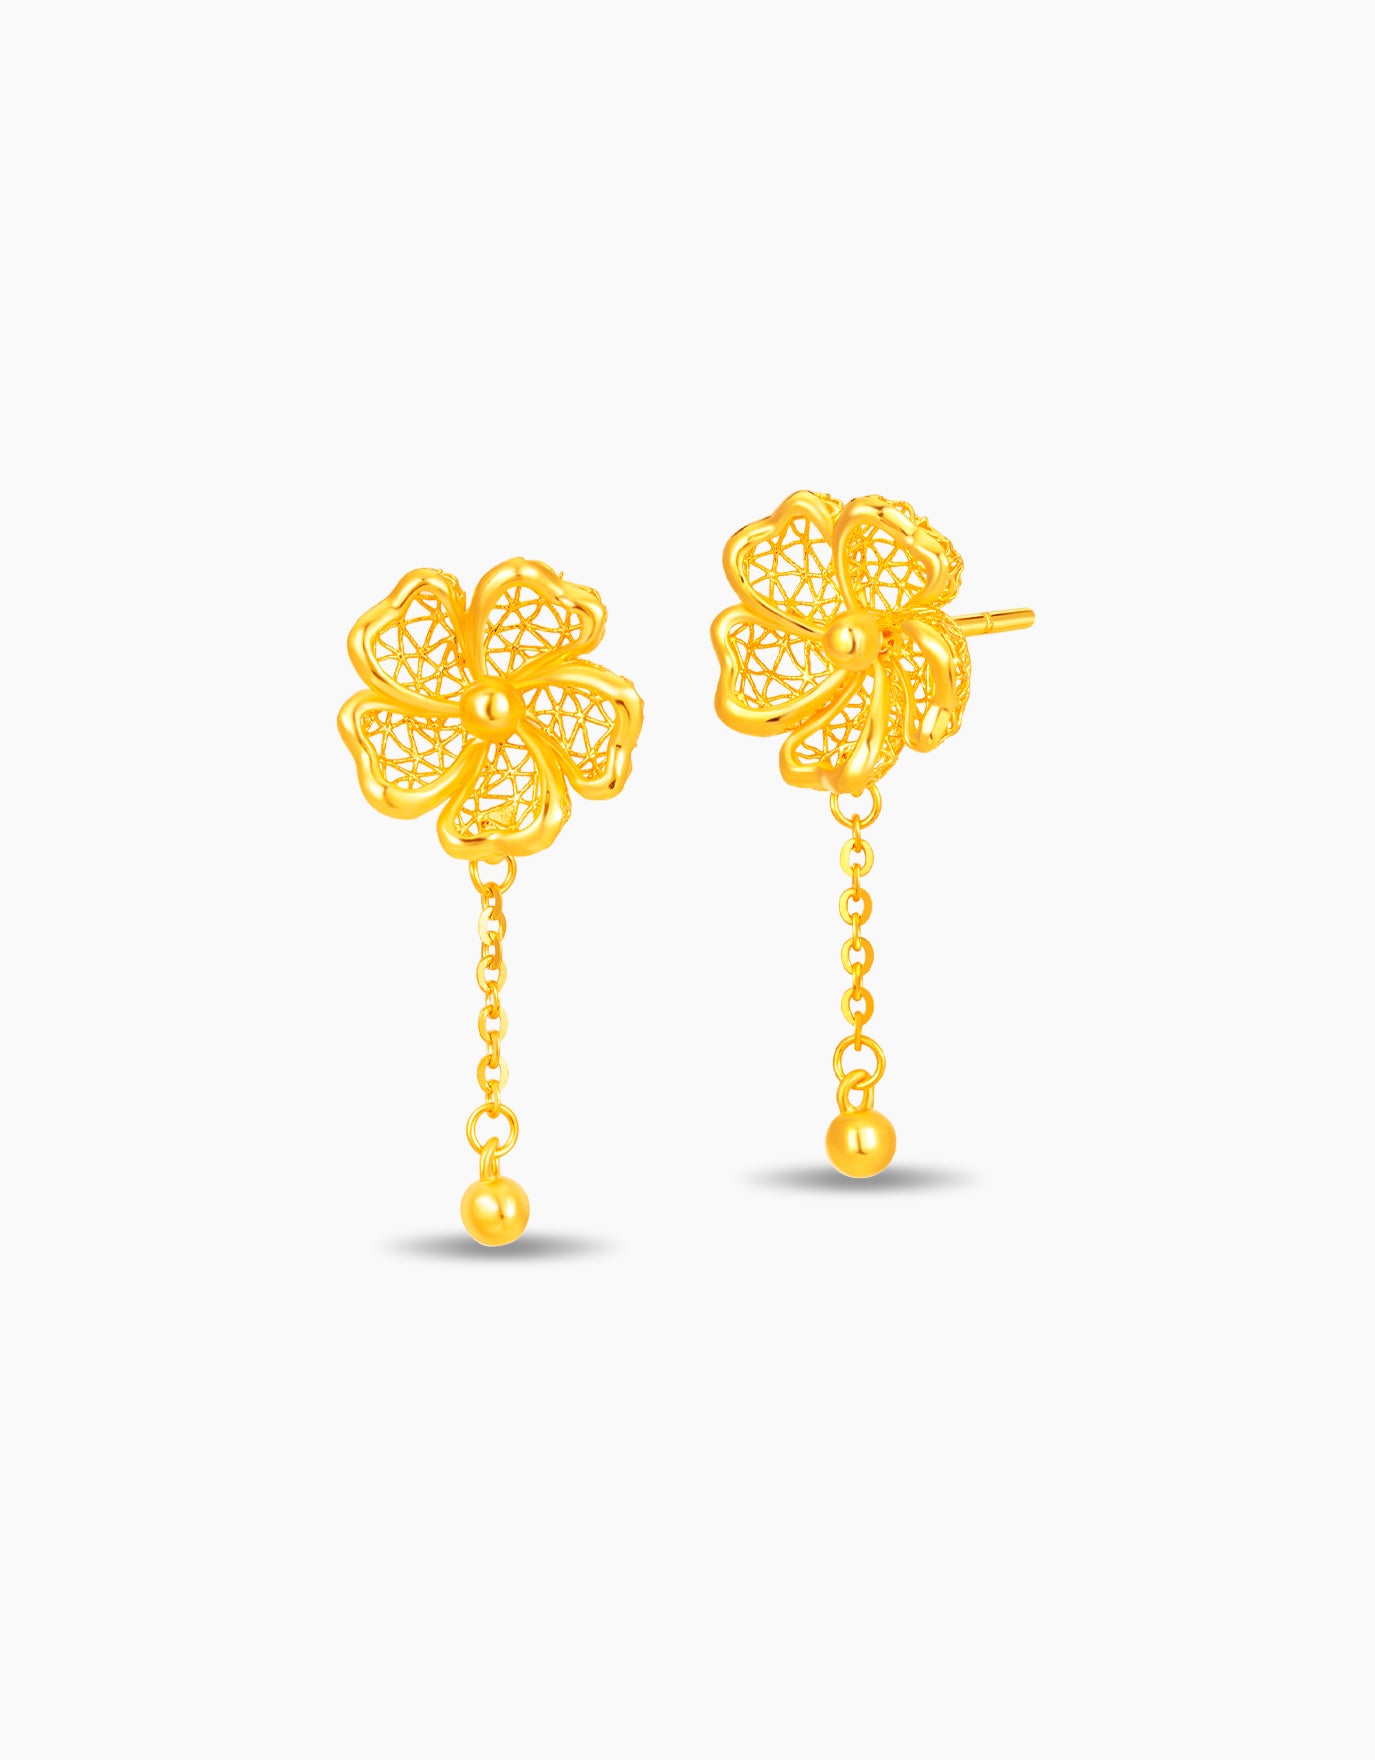 LVC 9IN Periwinkle 999 Gold Earrings